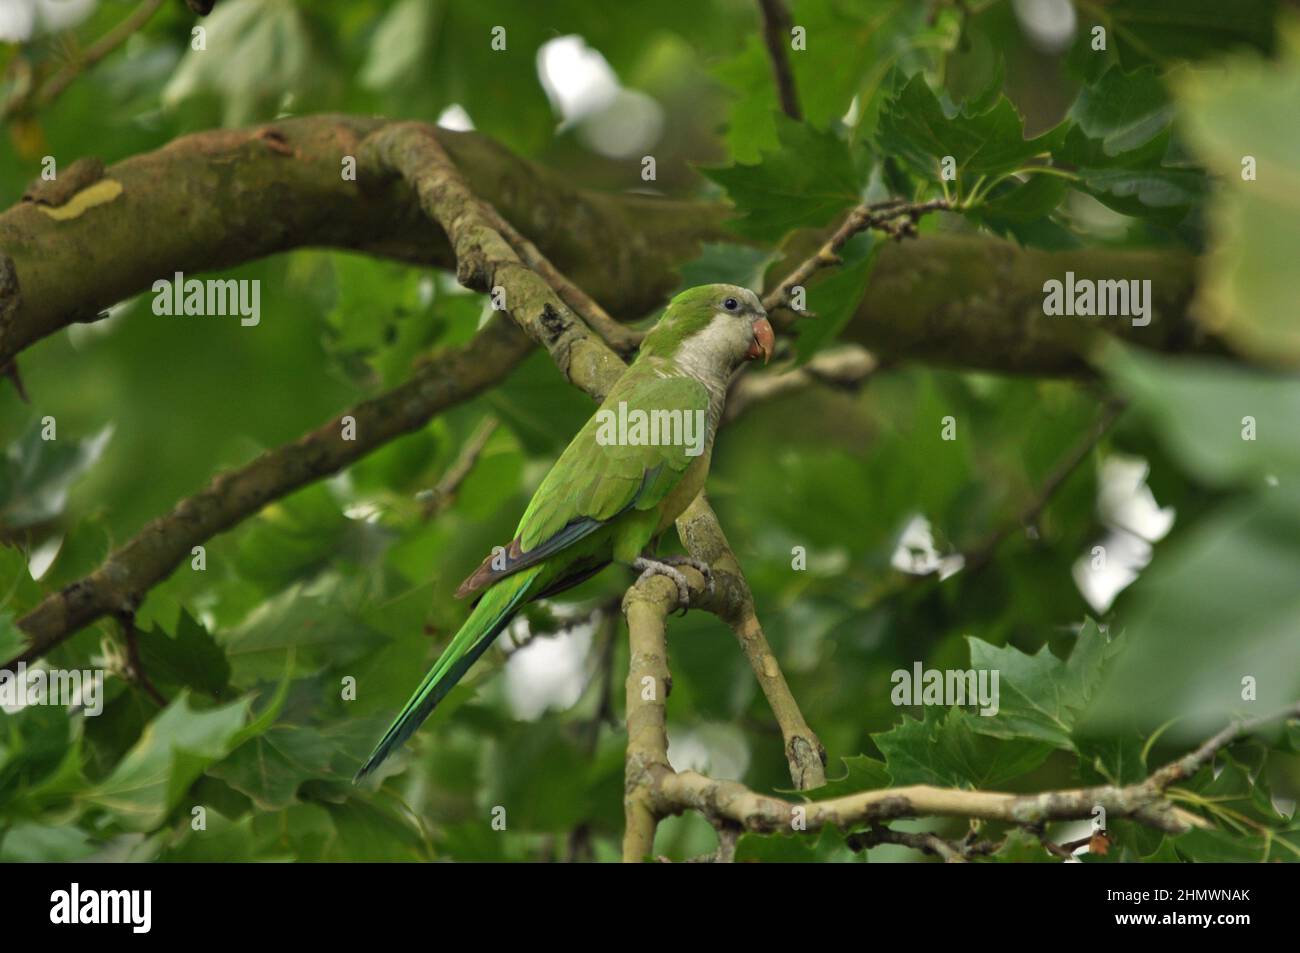 Monk Parakeet (Myiopsitta monachus) perché dans un arbre, gros plan et plan latéral. Pris en Argentine Banque D'Images